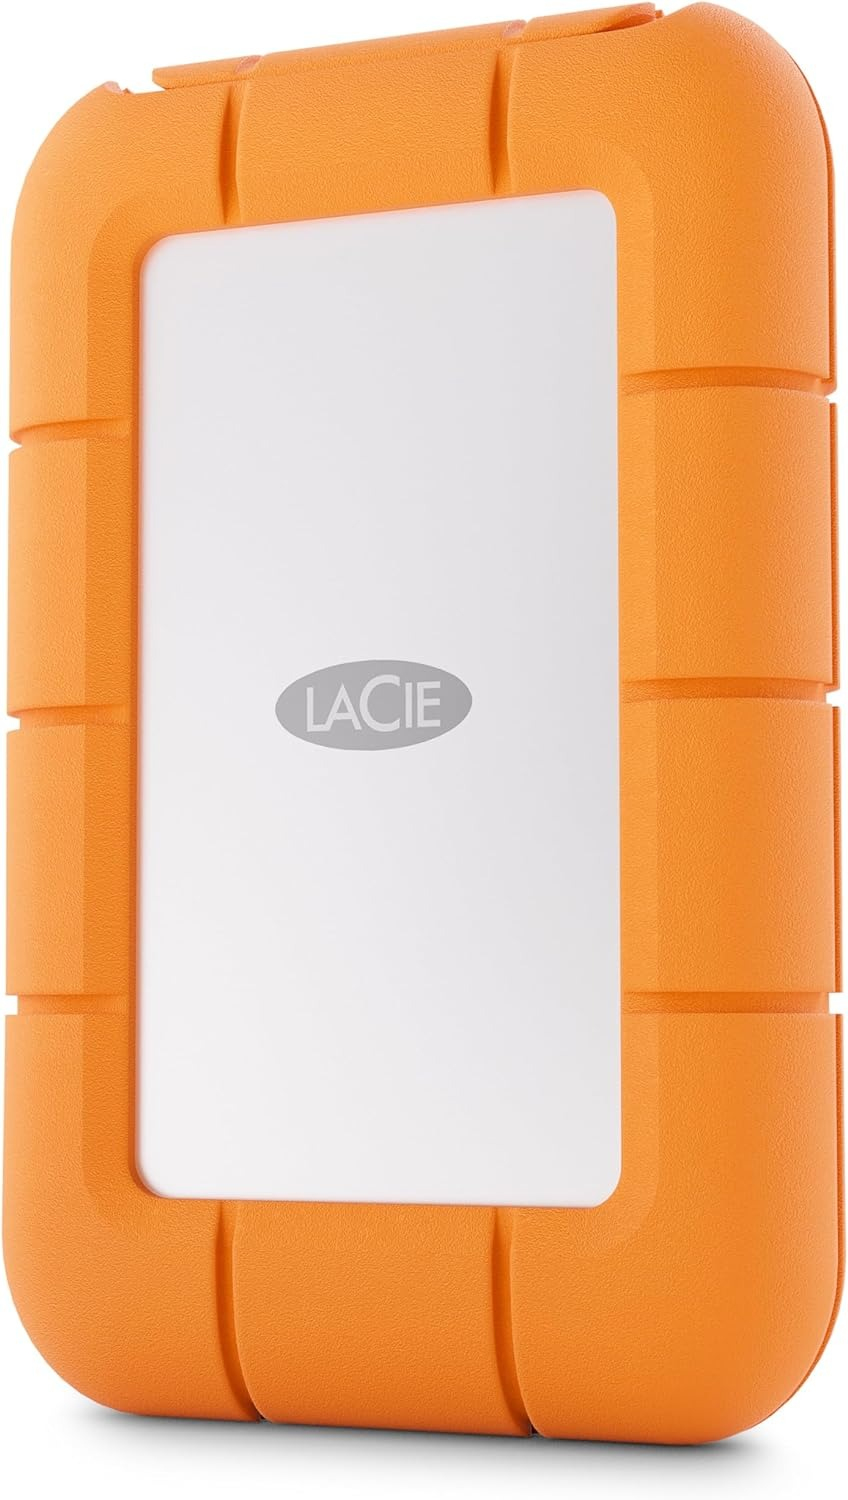 LaCie STMF500400 lecteur à circuits intégrés externe 500 Go Gris, Orange